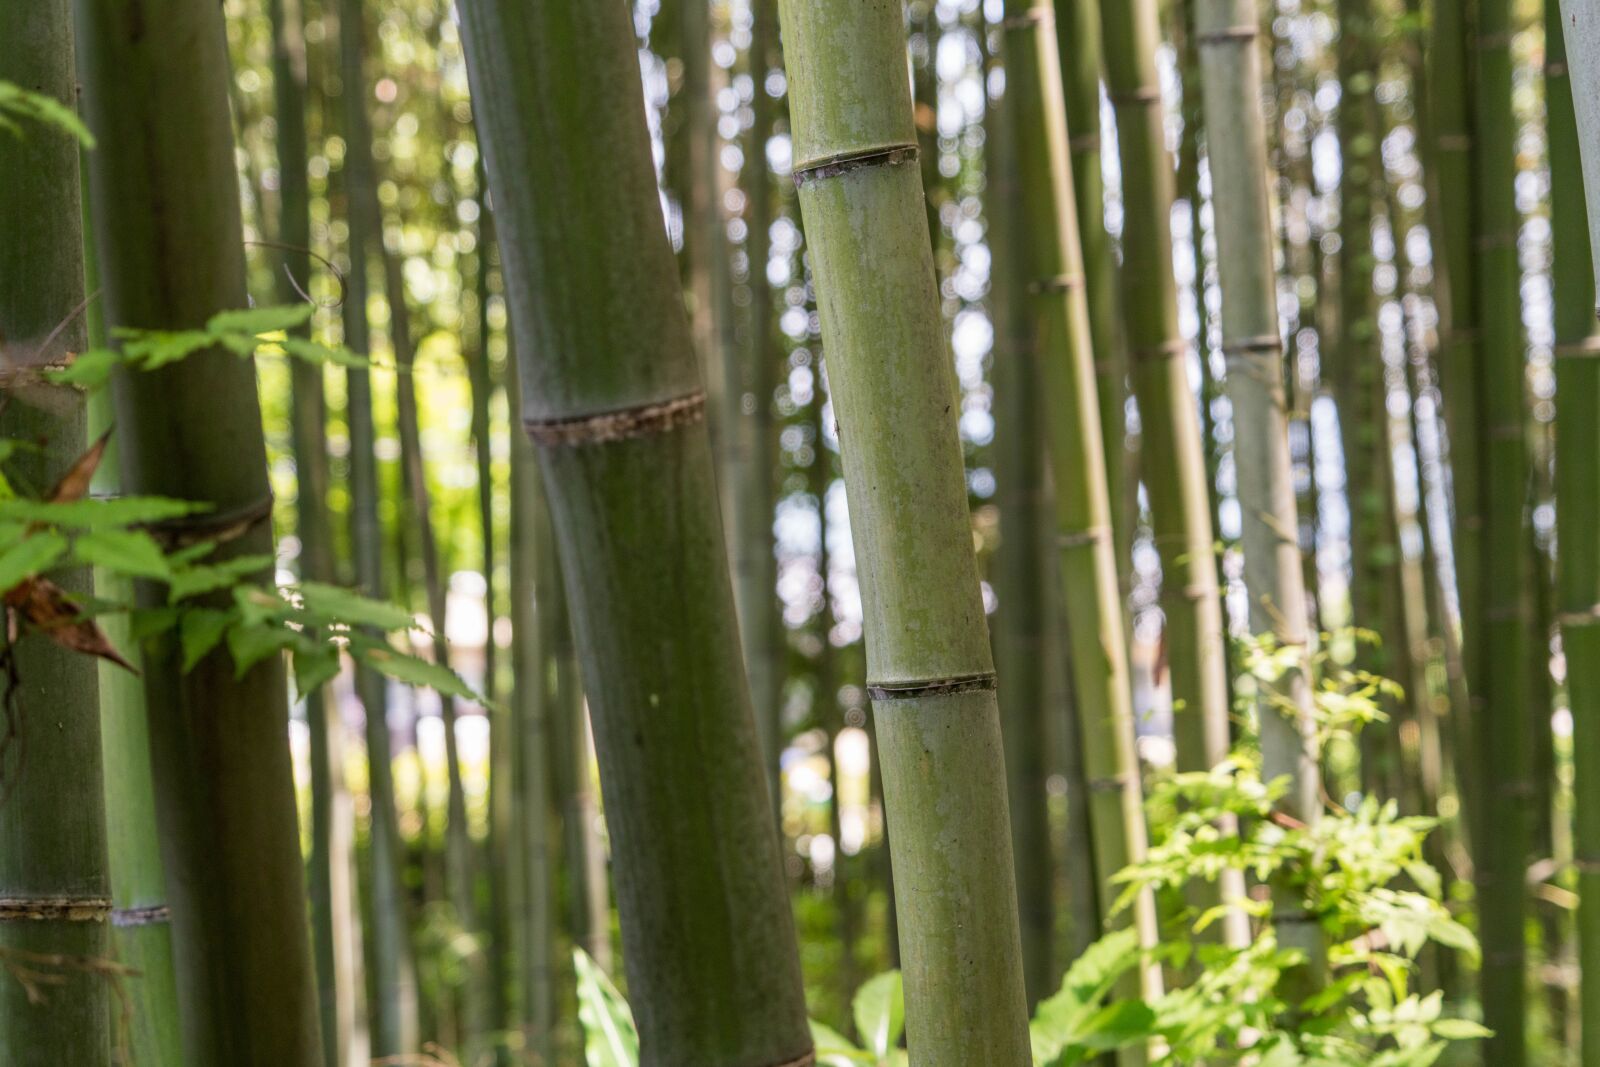 Sony a7R II sample photo. Japan, arashiyama, bamboo forest photography